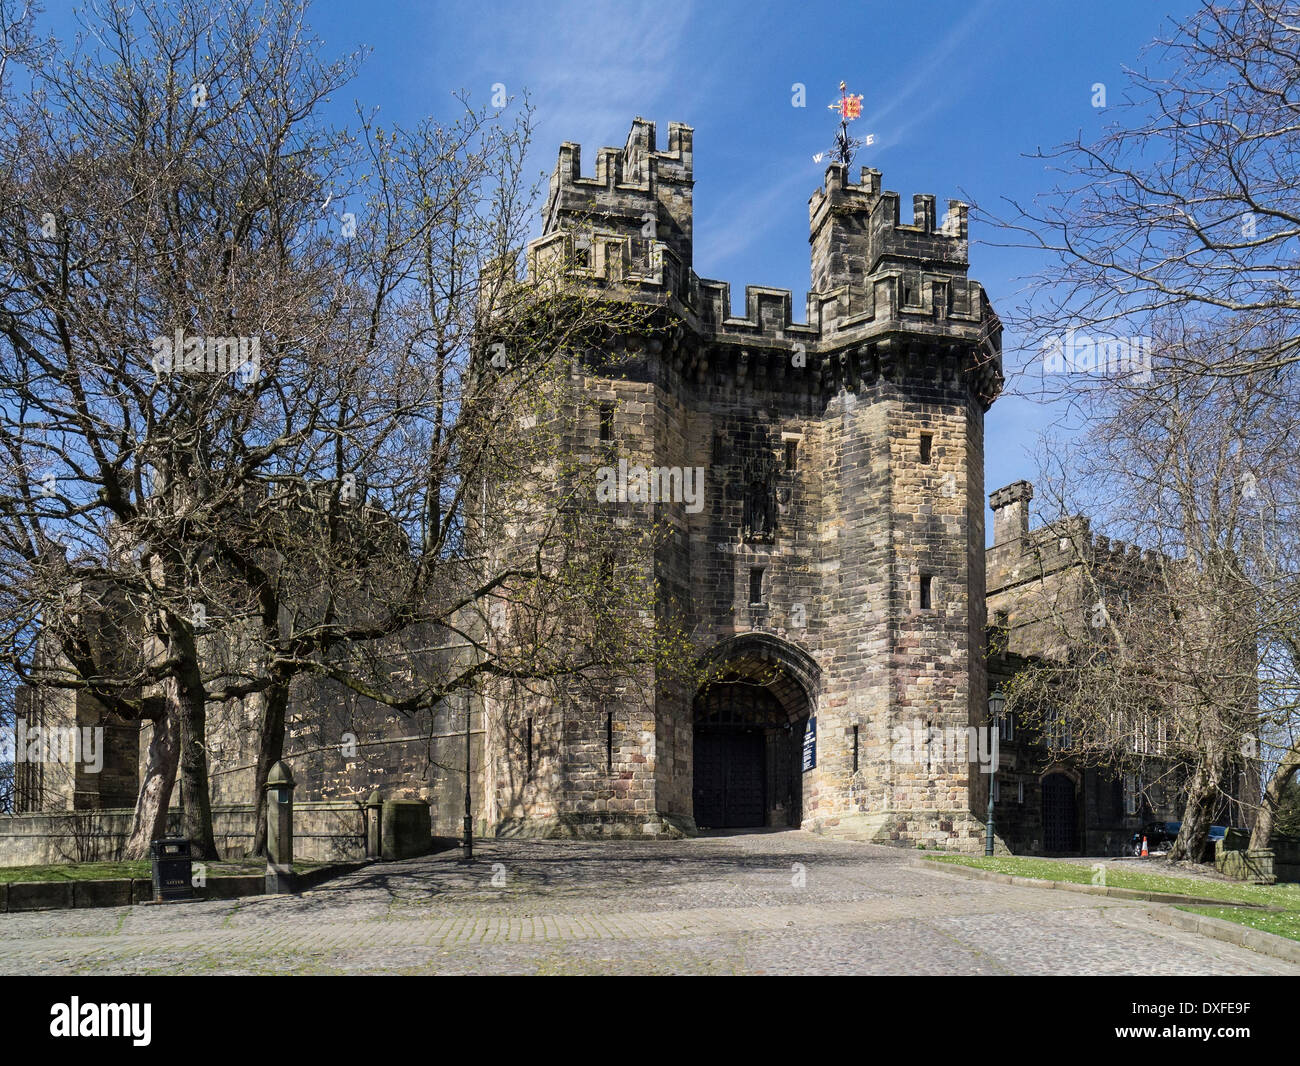 Château de Lancaster est un château médiéval situé dans la région de Lancaster dans le comté anglais du Lancashire Banque D'Images